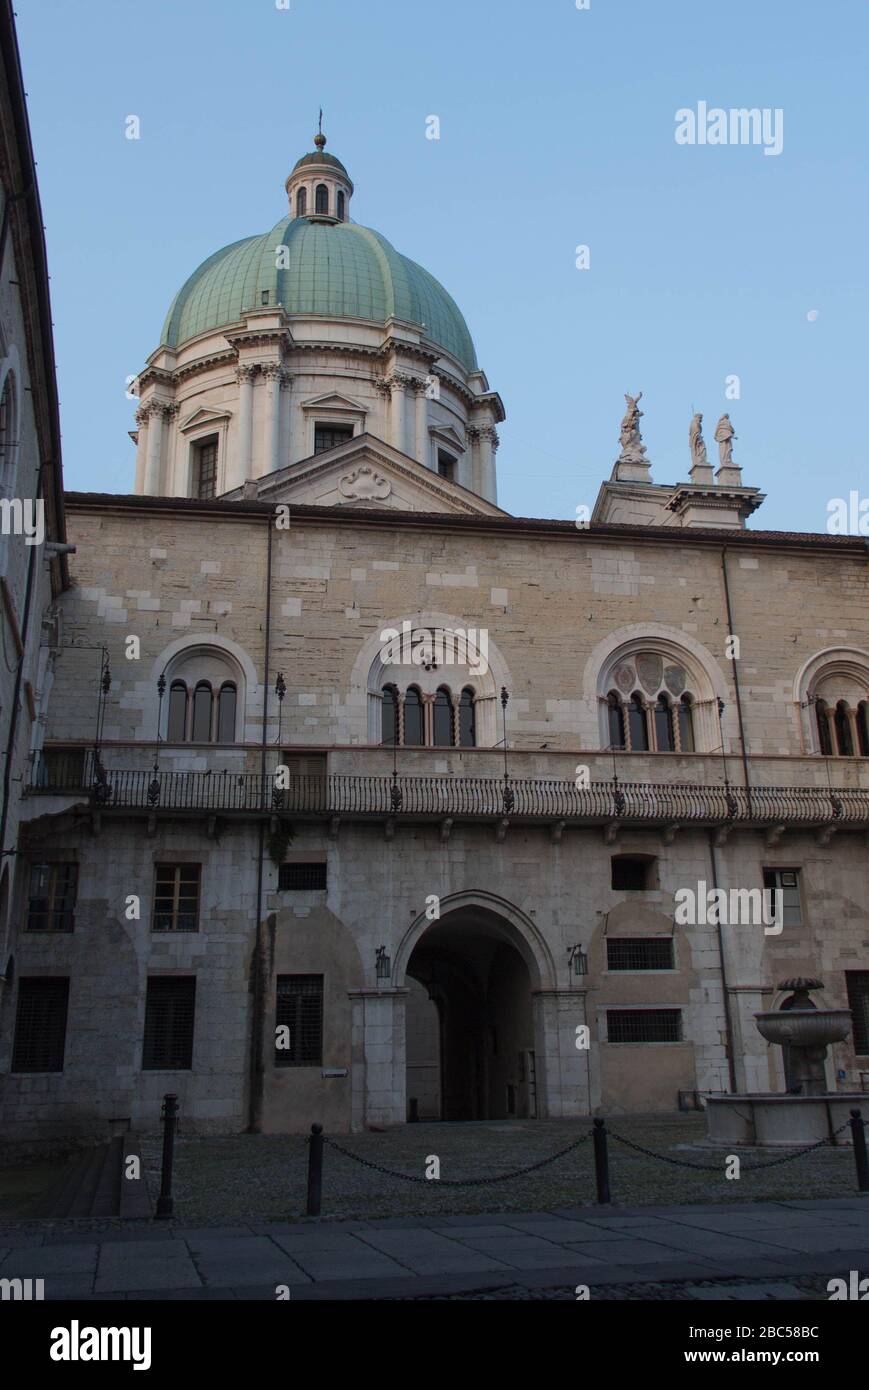 Brescia, Italie - 1 août 2018: La vue de la cour intérieure du palais médiéval Palazzo del Broletto avec dôme de la nouvelle cathédrale en arrière-plan en août Banque D'Images